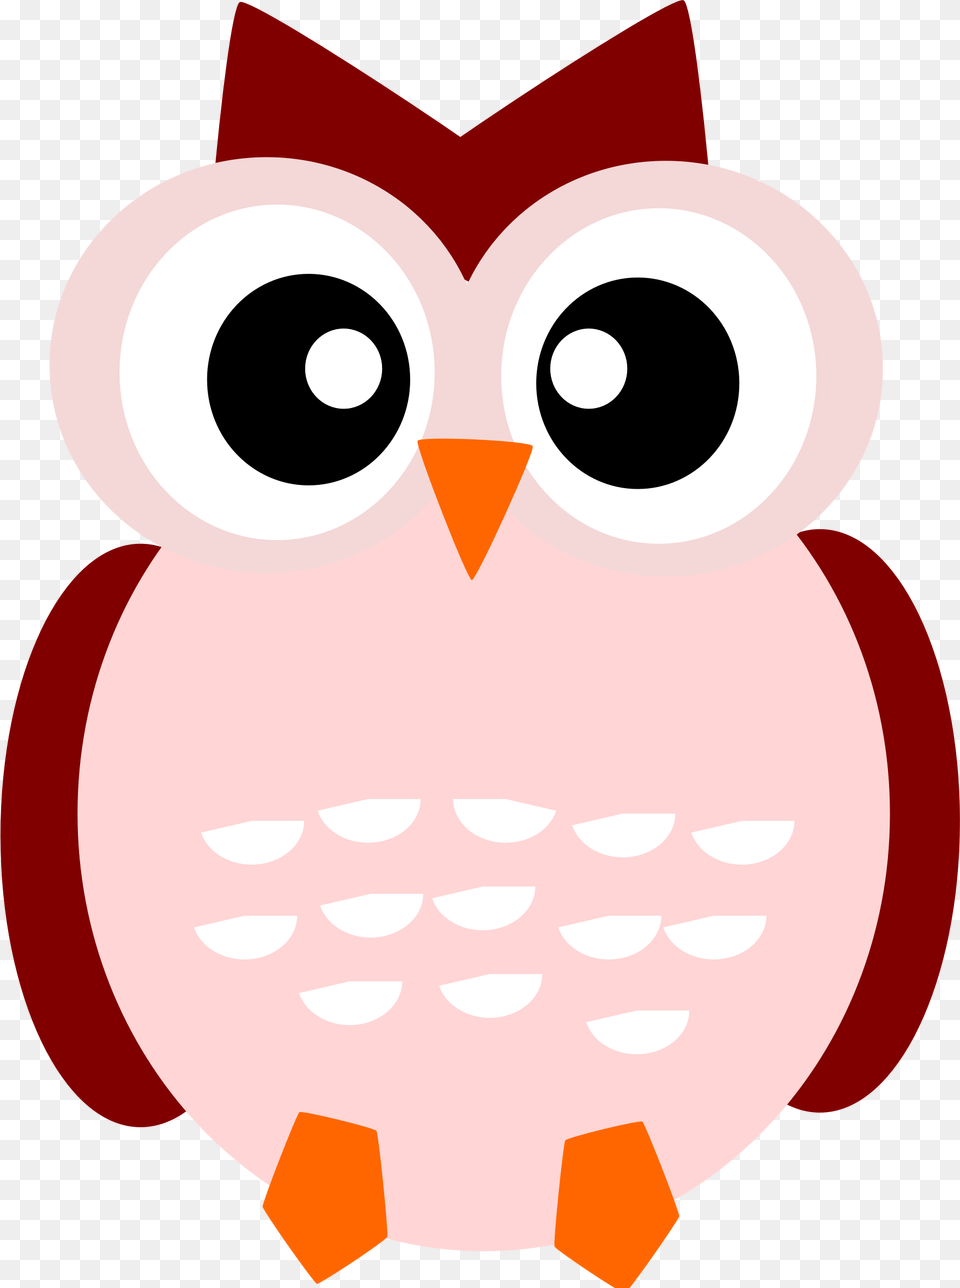 A Cute Owl, Animal, Bird, Nature, Outdoors Free Transparent Png